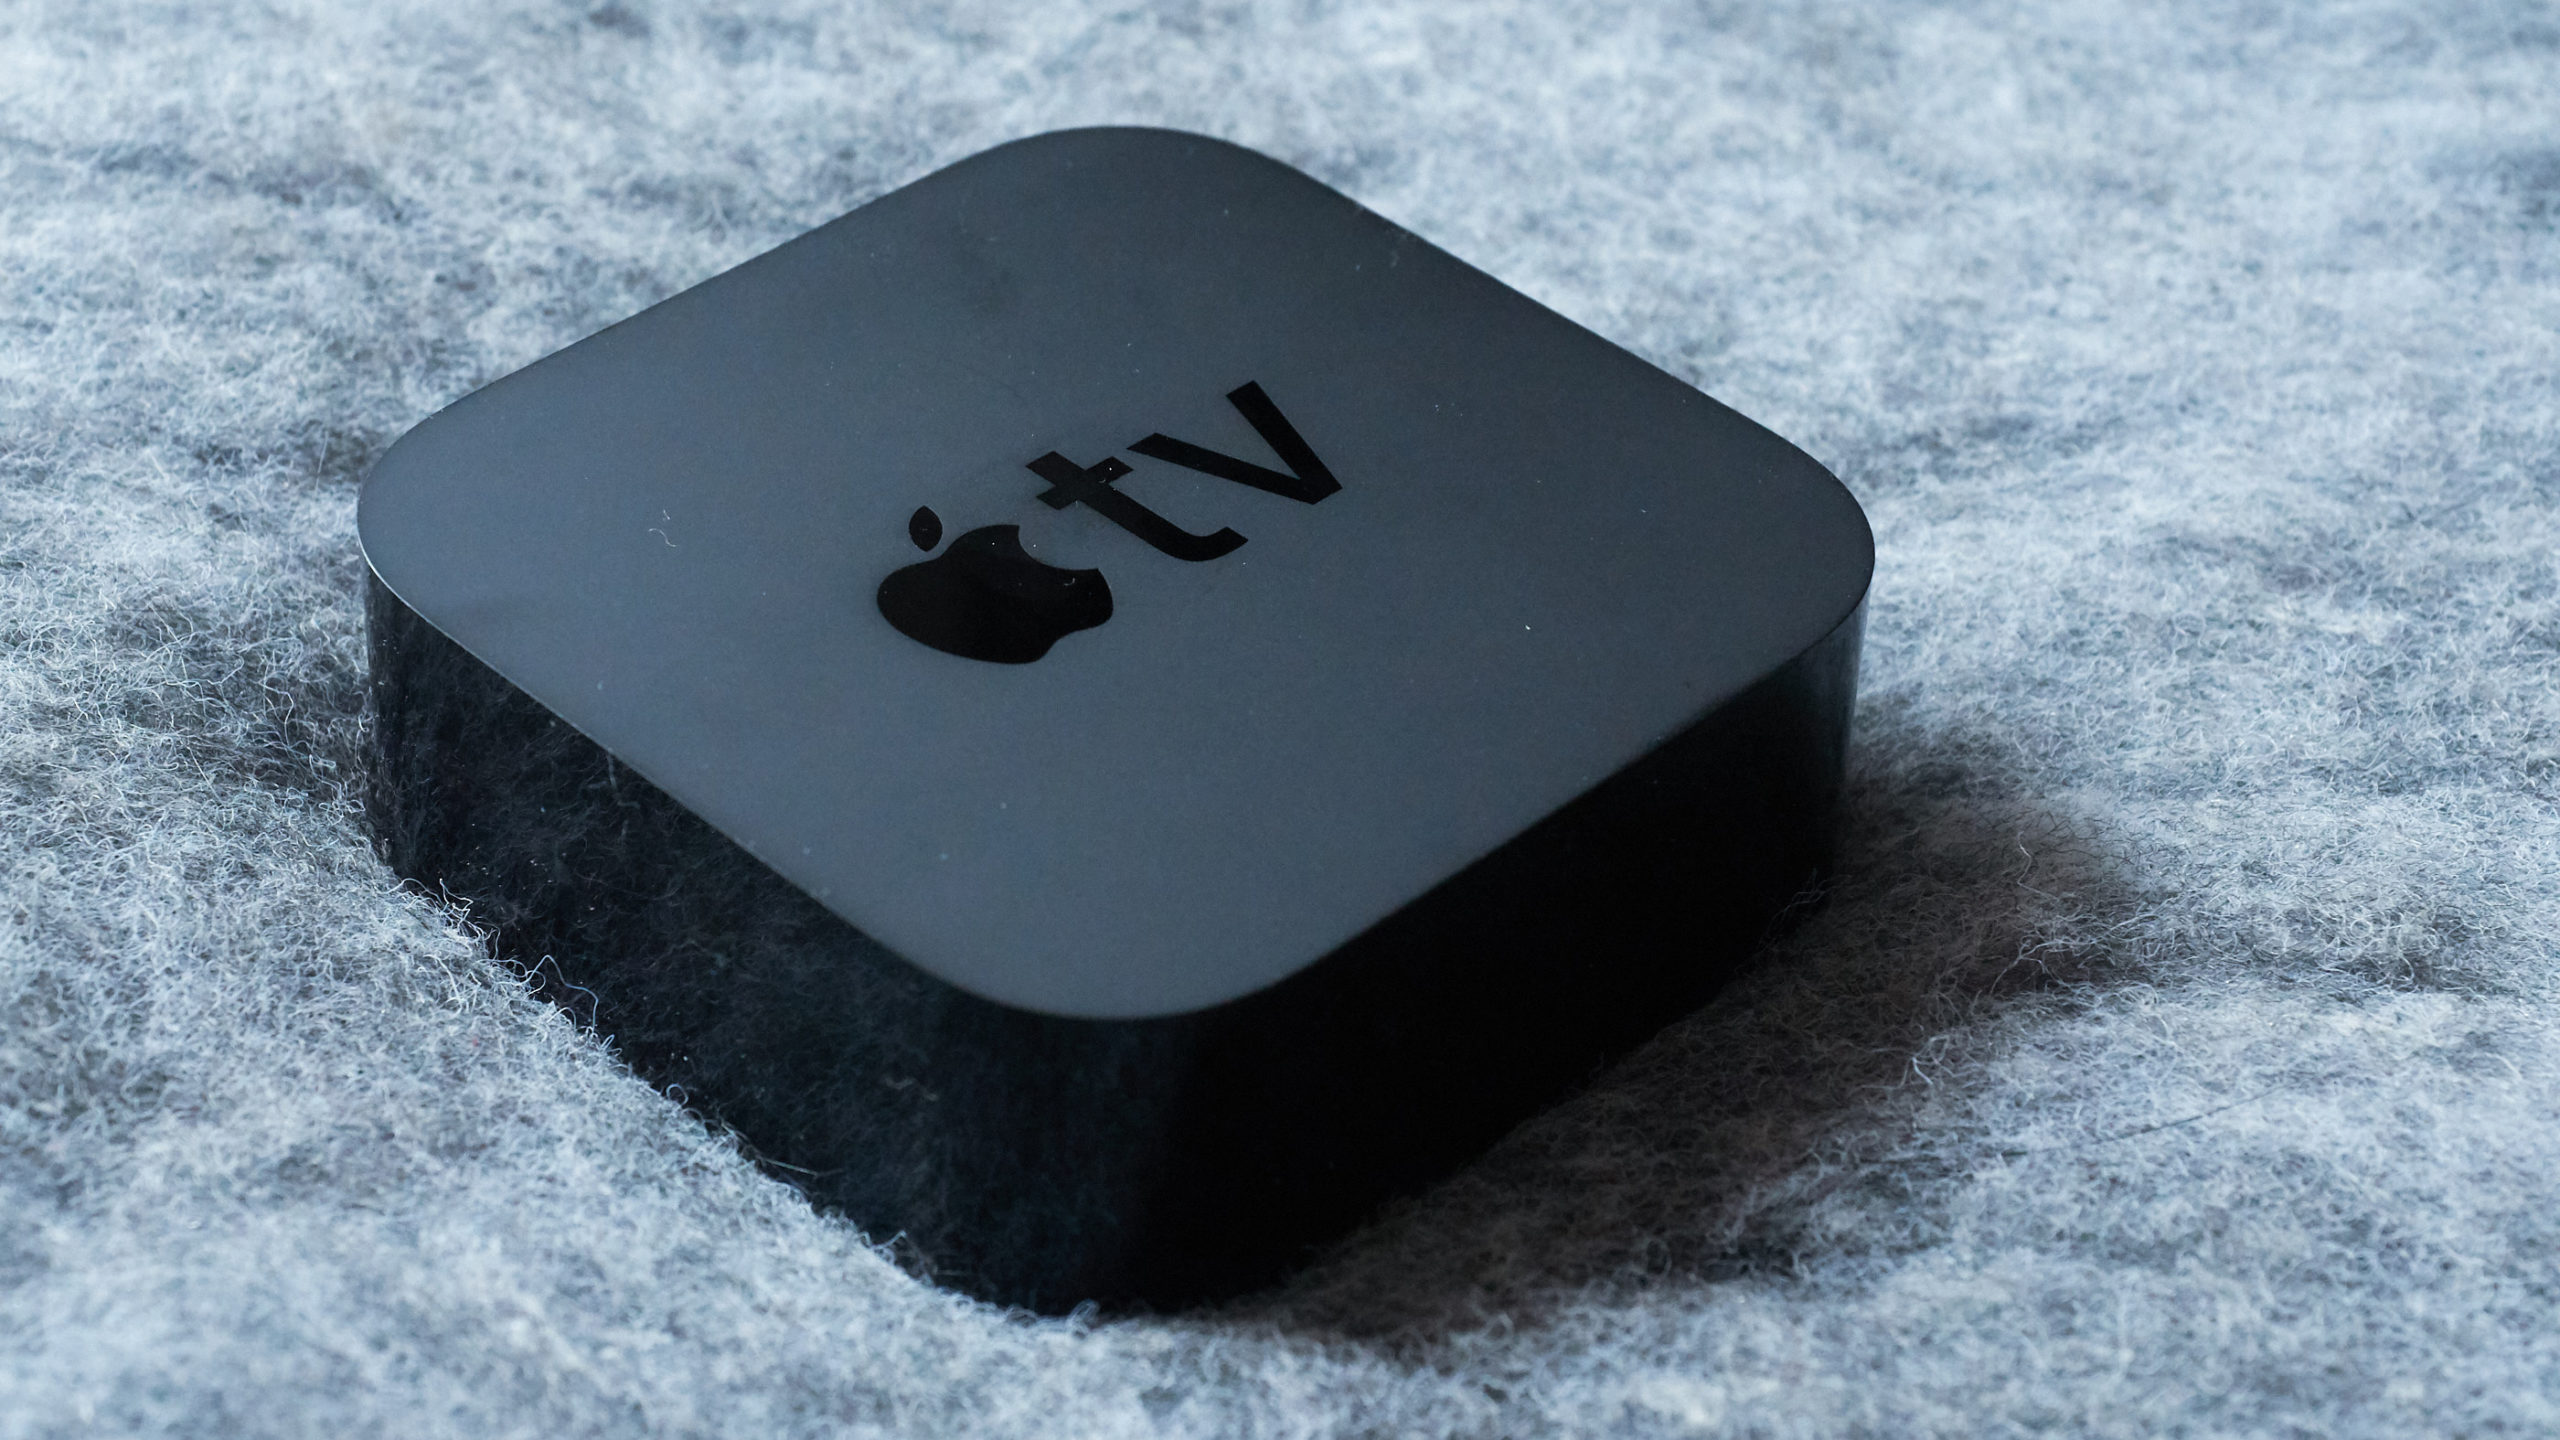 Apple TV 4K: The Gizmodo Review